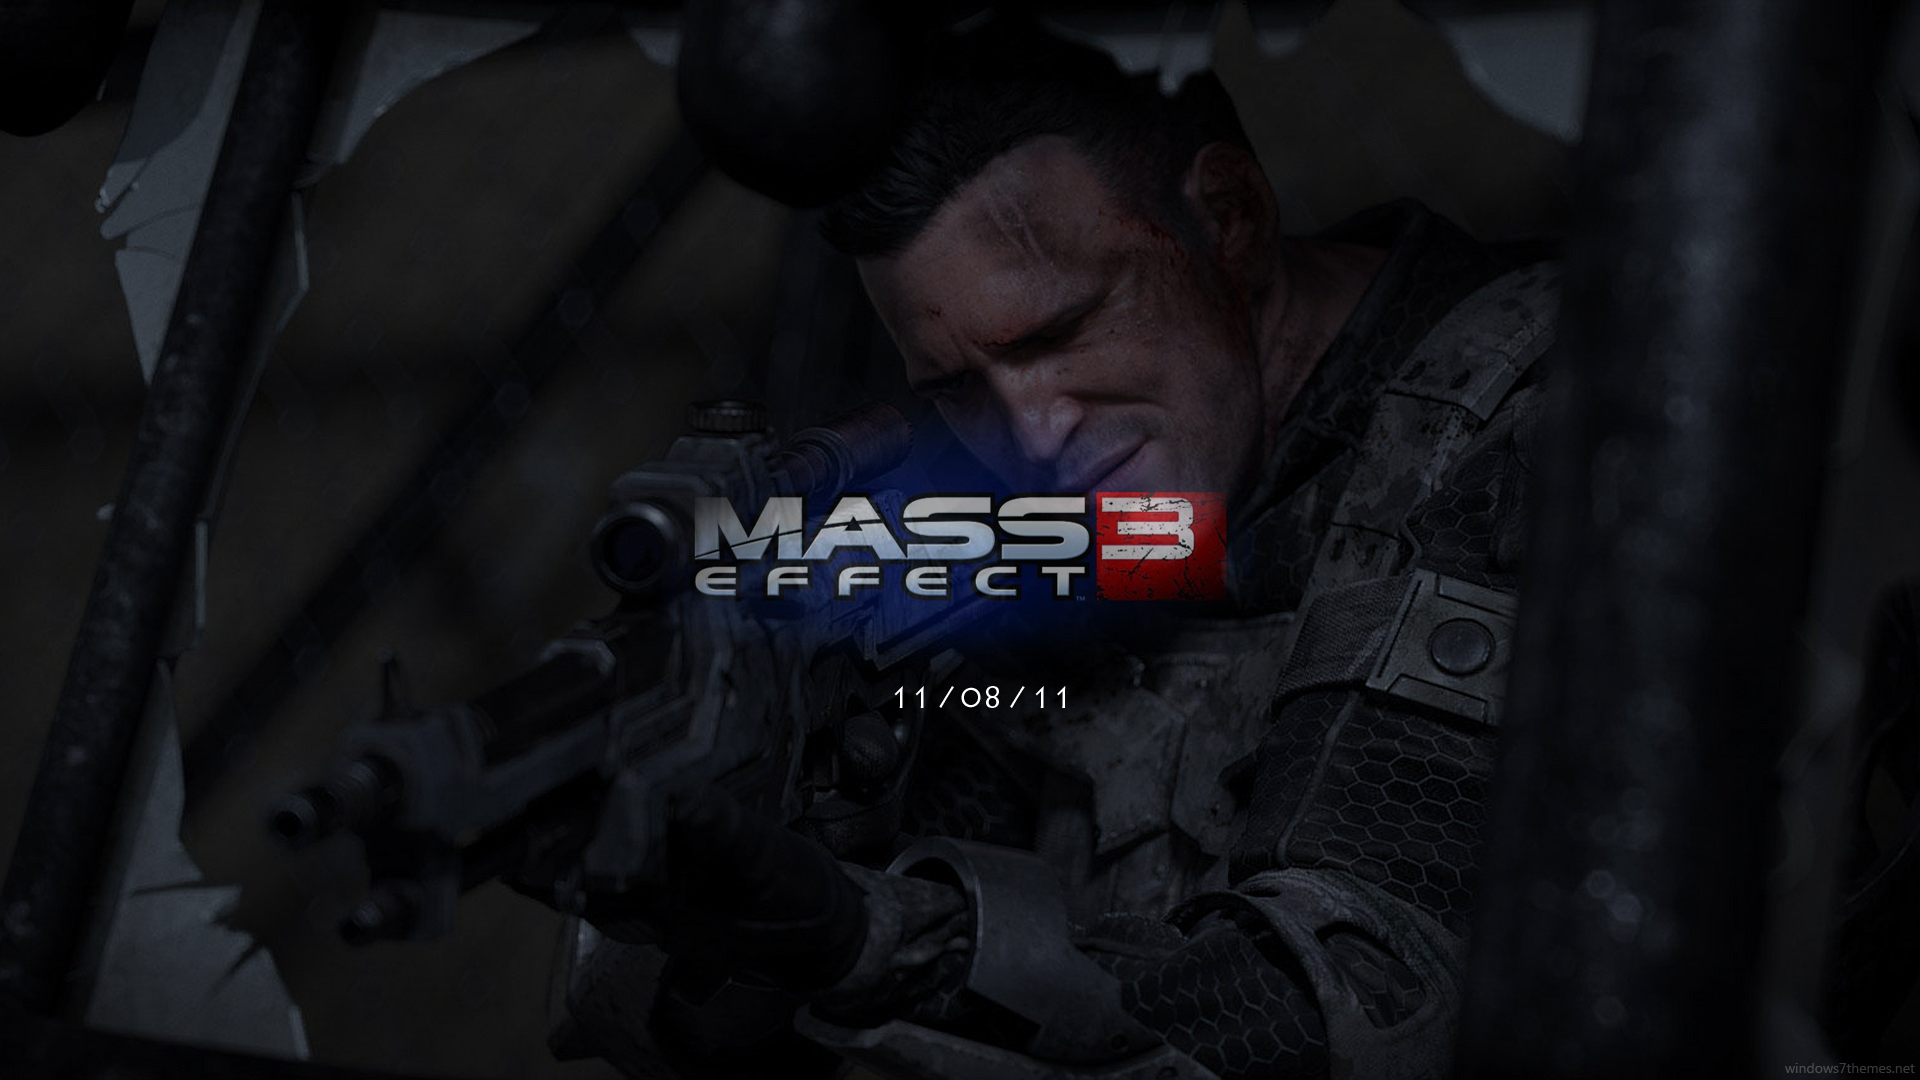 New Mass Effect Wallpaper HD Widescreen